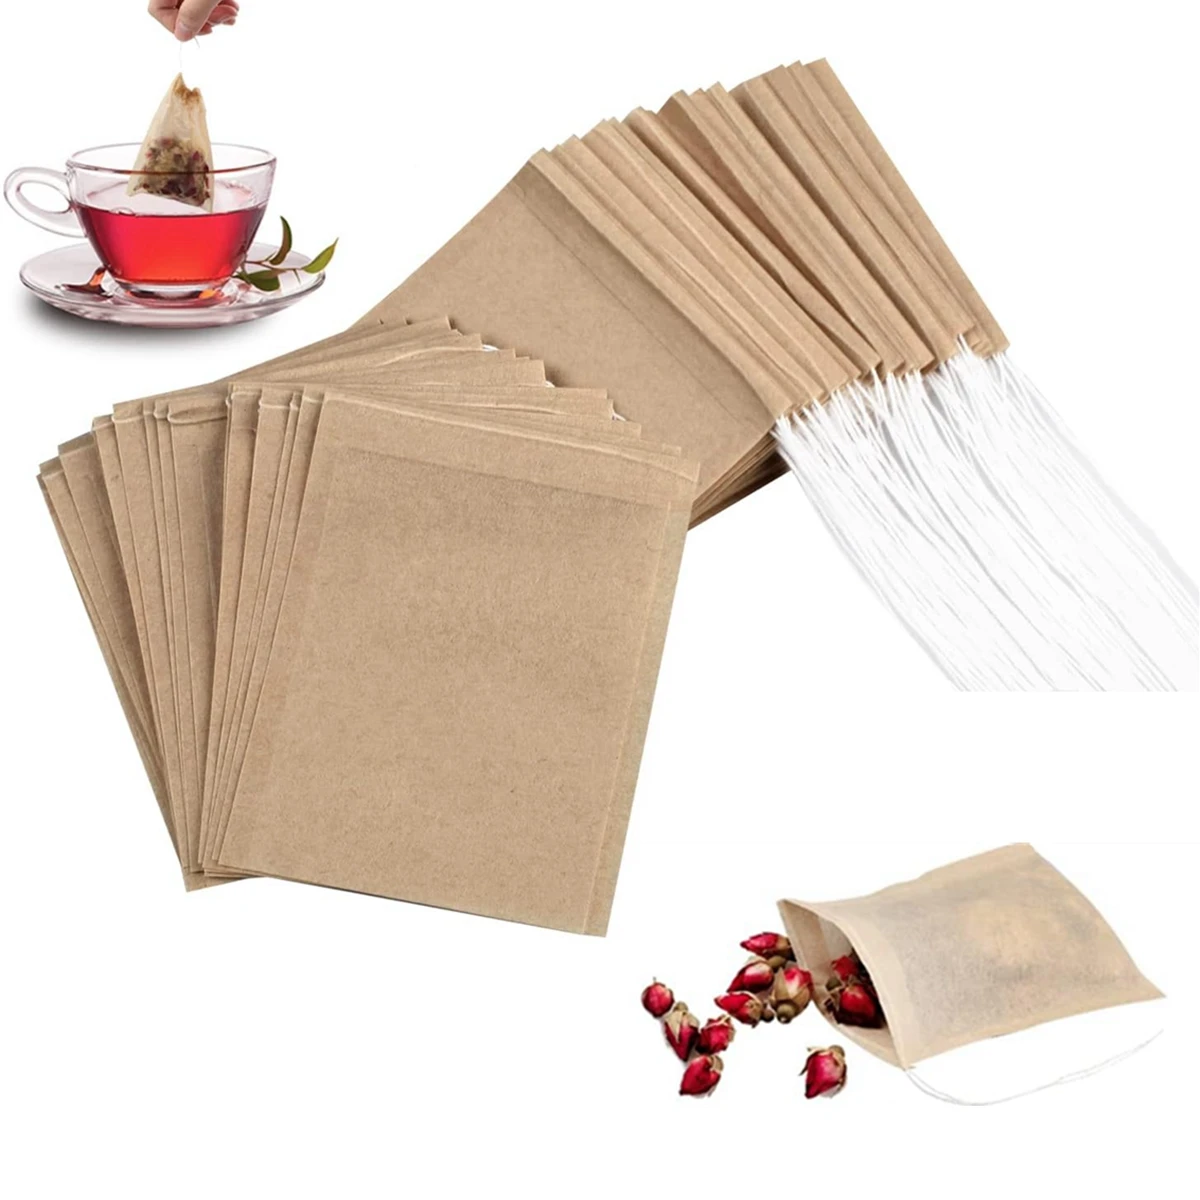 

Пакеты для чая, пустой порошок, листовой травяной рассыпчатый чай, бумага для экологически чистого травяного чая на шнурке с фильтром, биоразлагаемый пакетик для чая, 500/1000 шт.